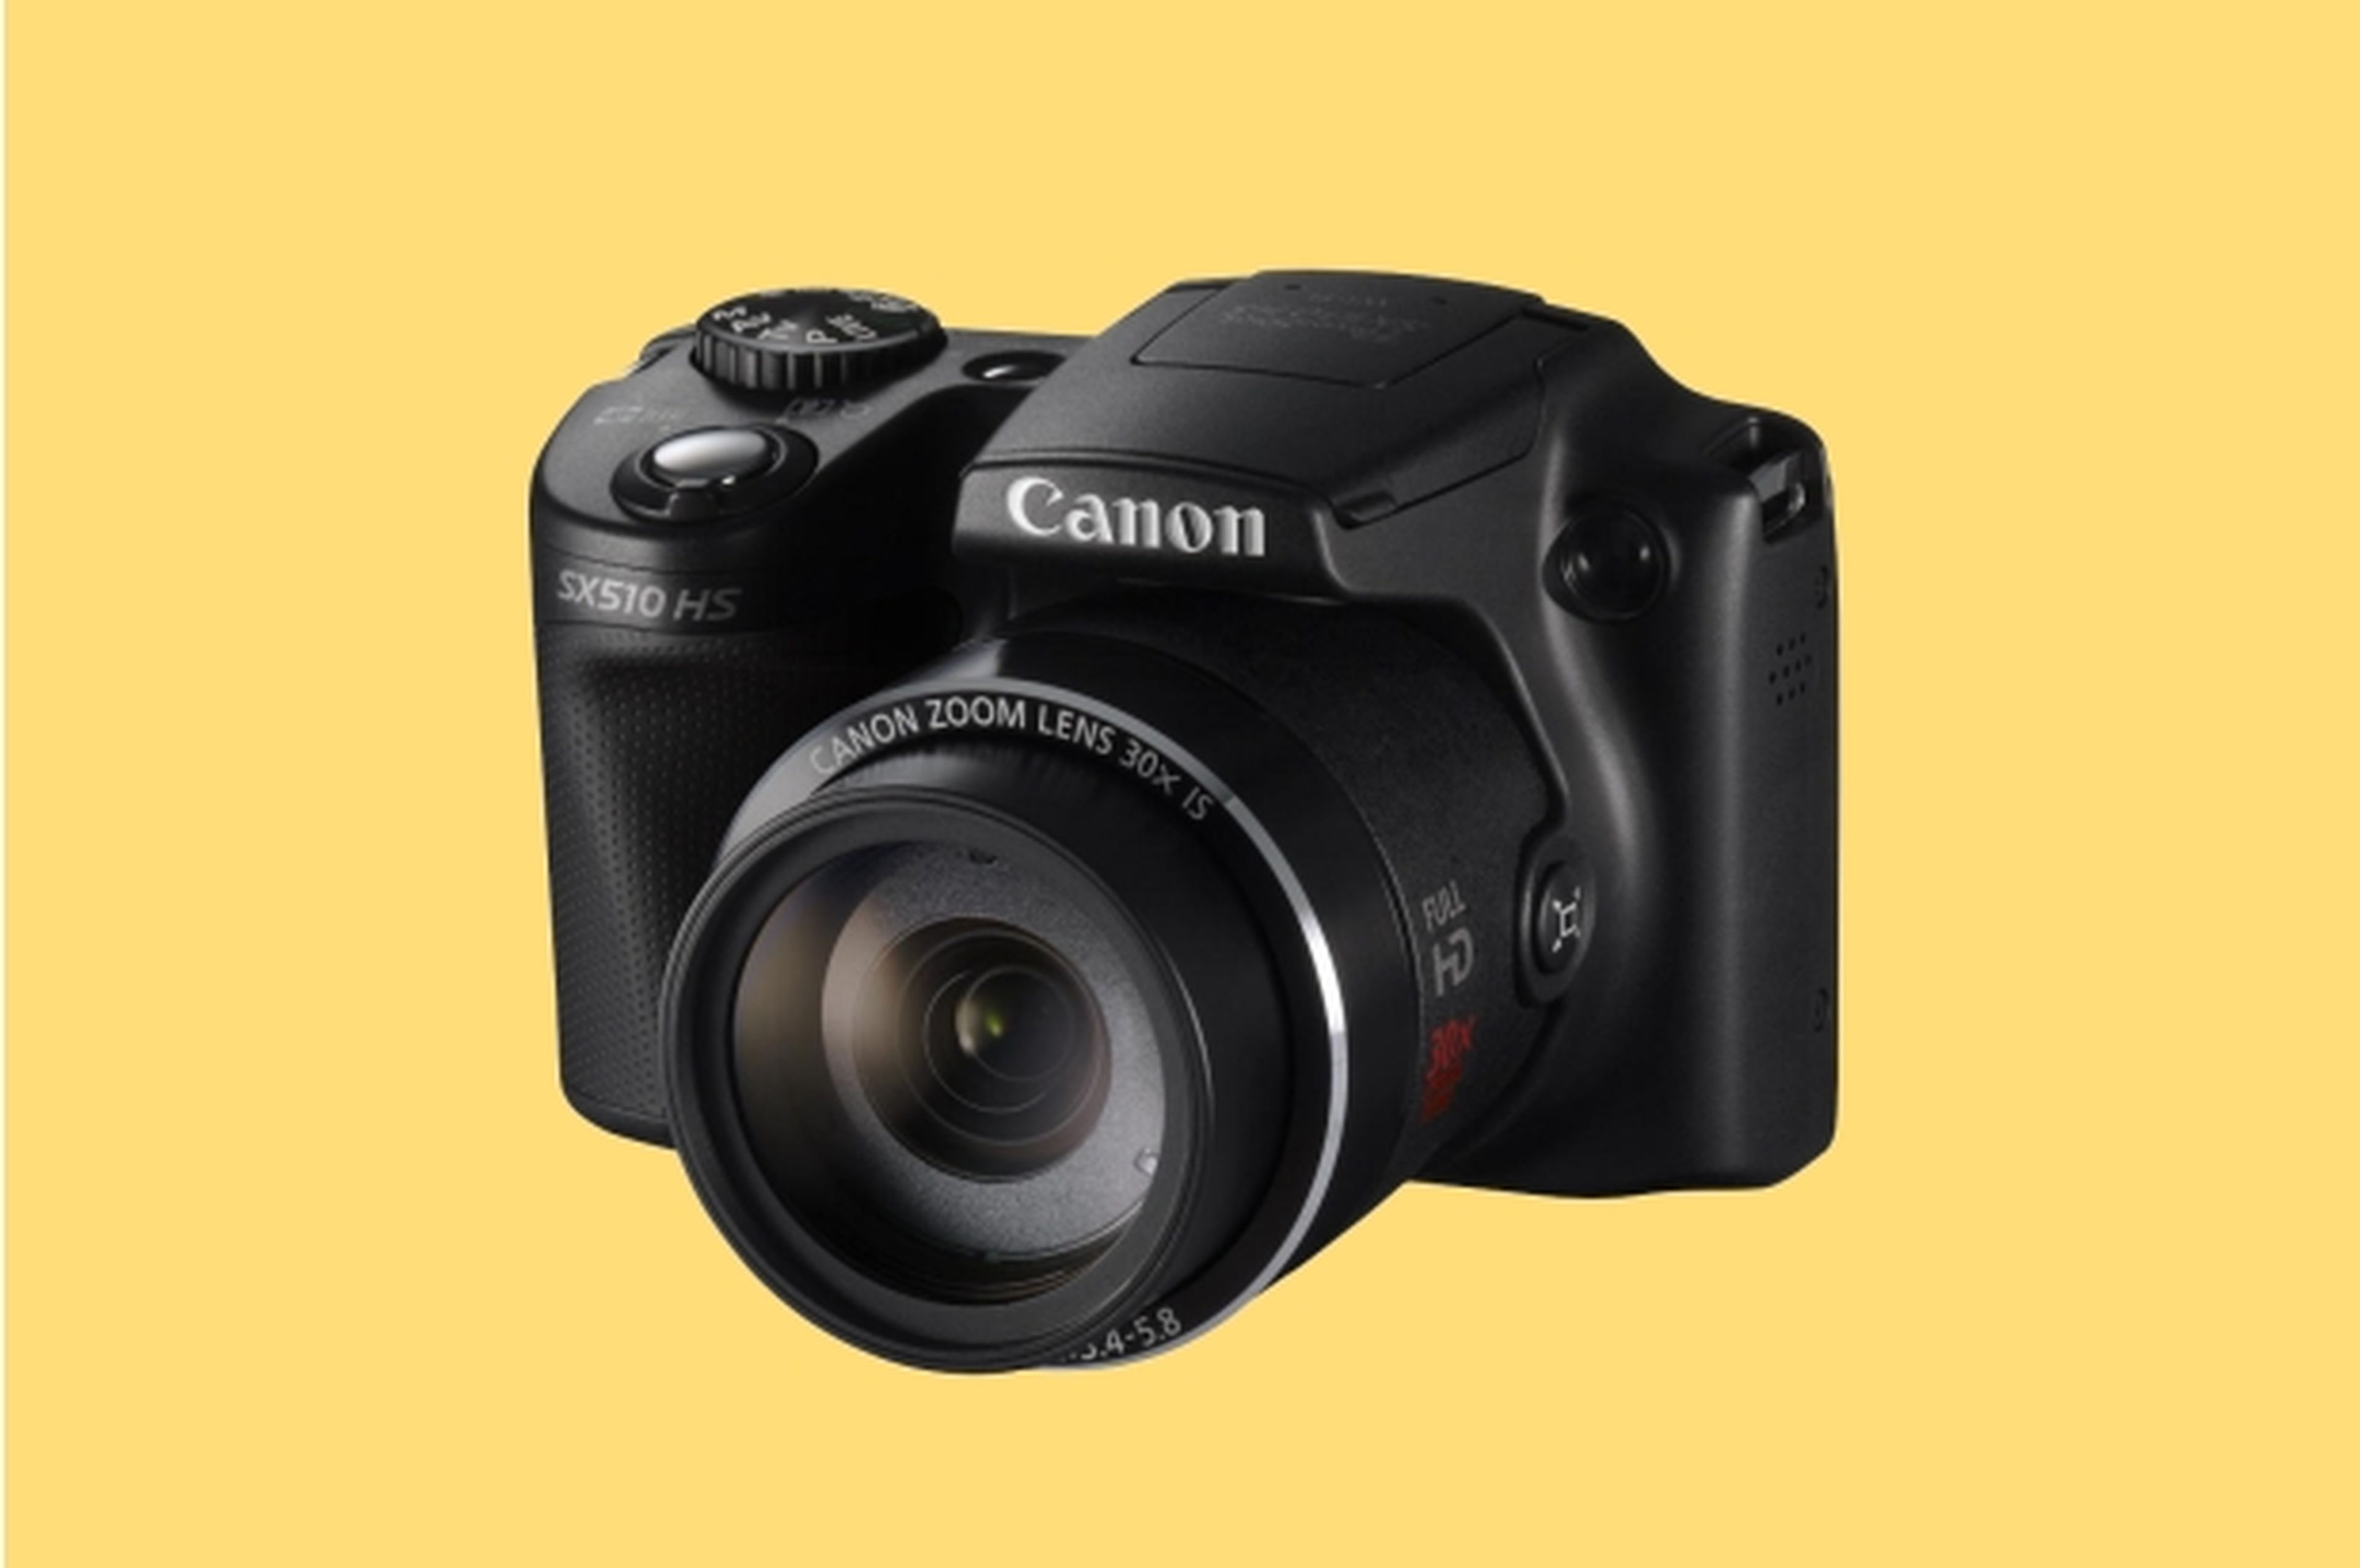 Canon presenta nuevas cámaras compactas de la gama PowerShot